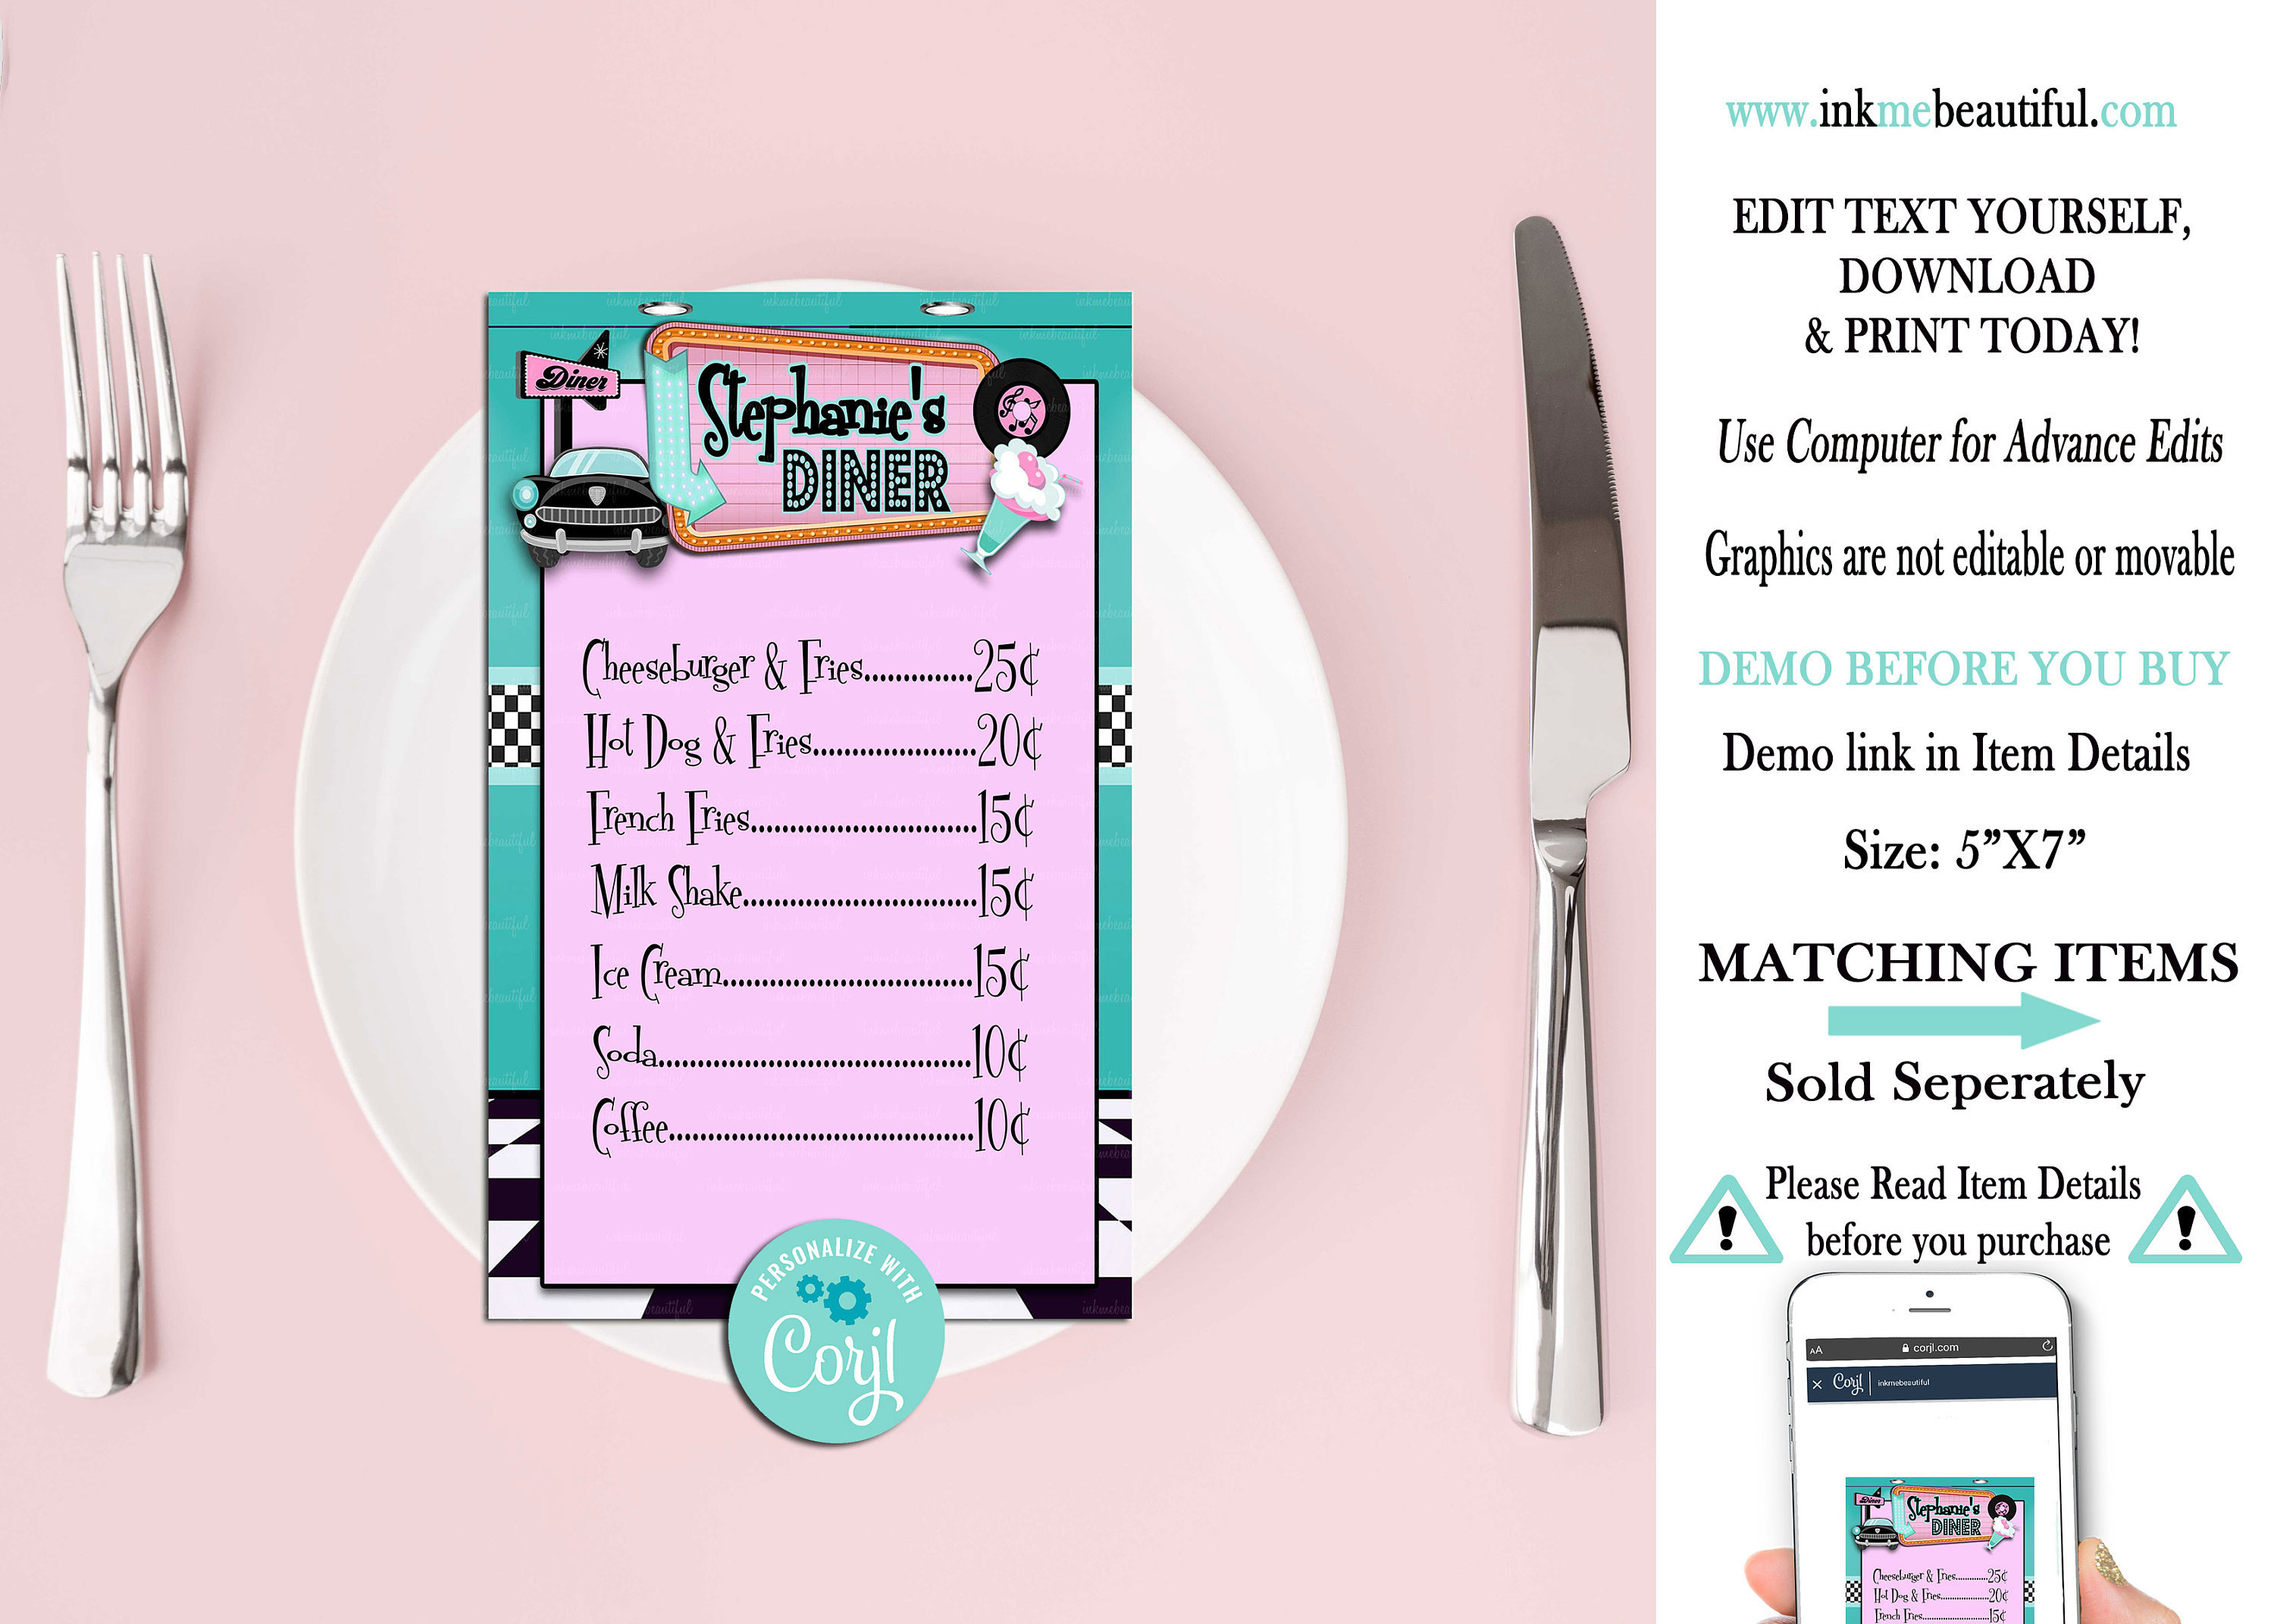 50s diner menu template